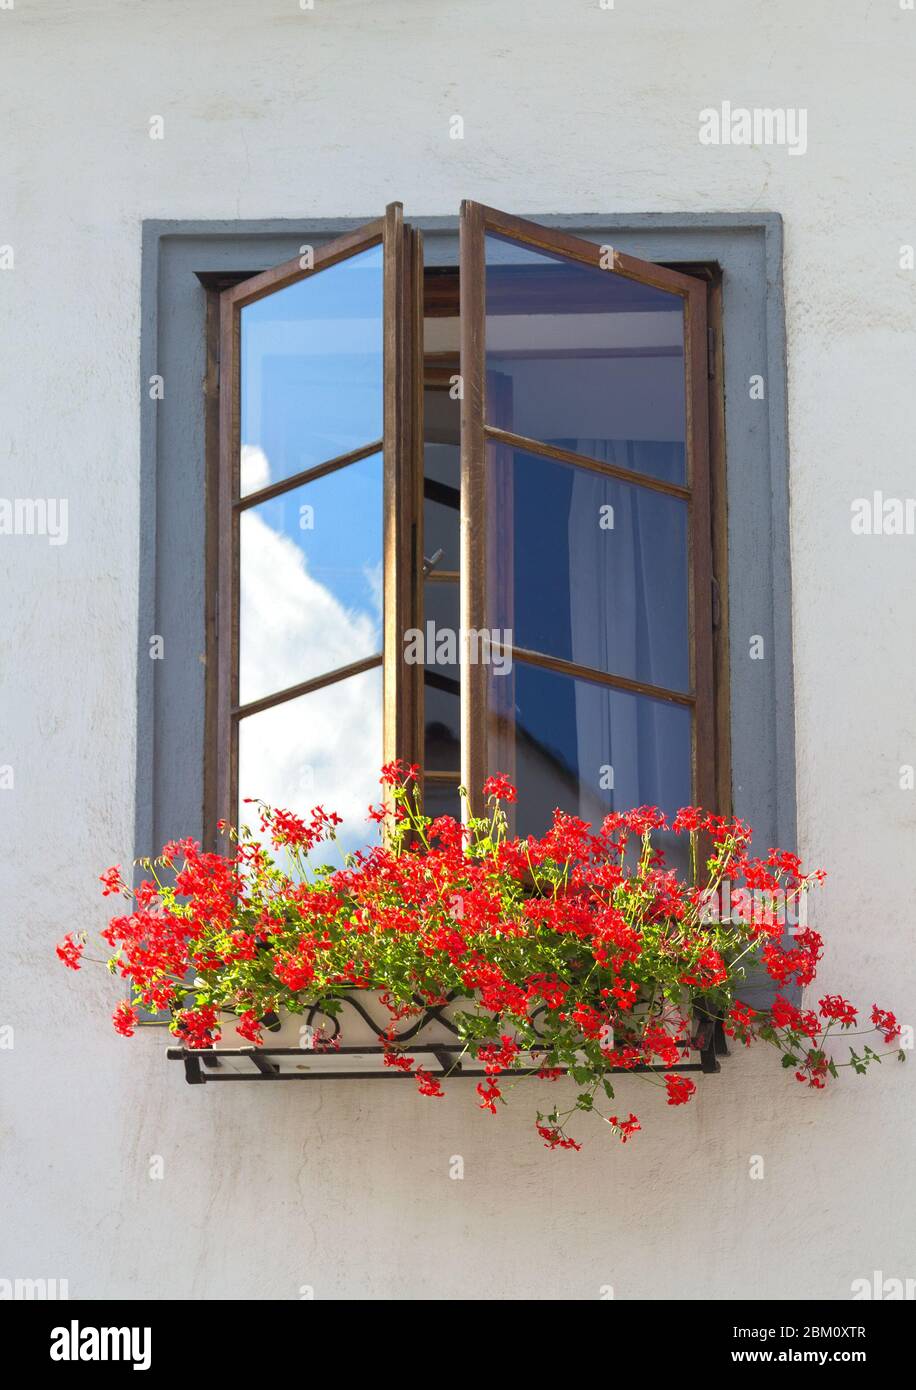 Fenêtre avec fleurs rouges sur un fond de mur blanc d'un bâtiment. Cesky Krumlov, république tchèque. Banque D'Images